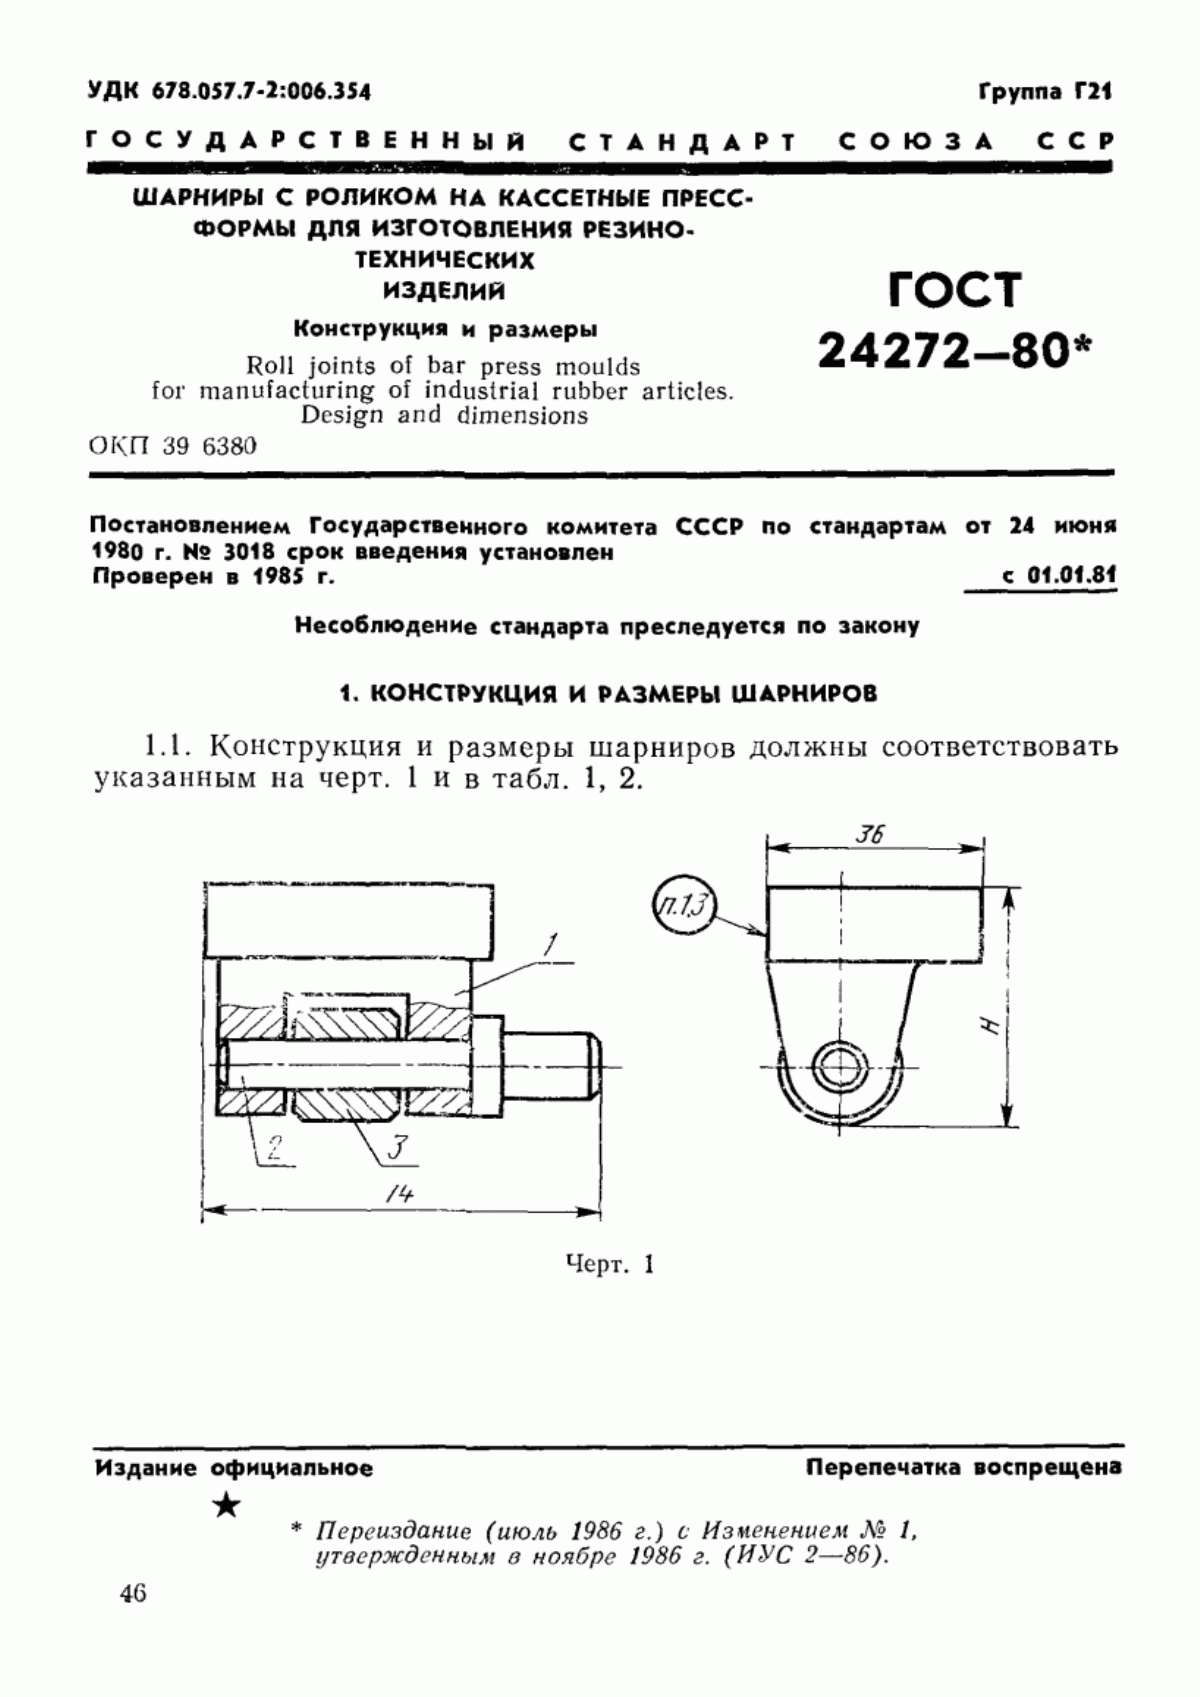 ГОСТ 24272-80 Шарниры с роликом на кассетные пресс-формы для изготовления резинотехнических изделий. Конструкция и размеры